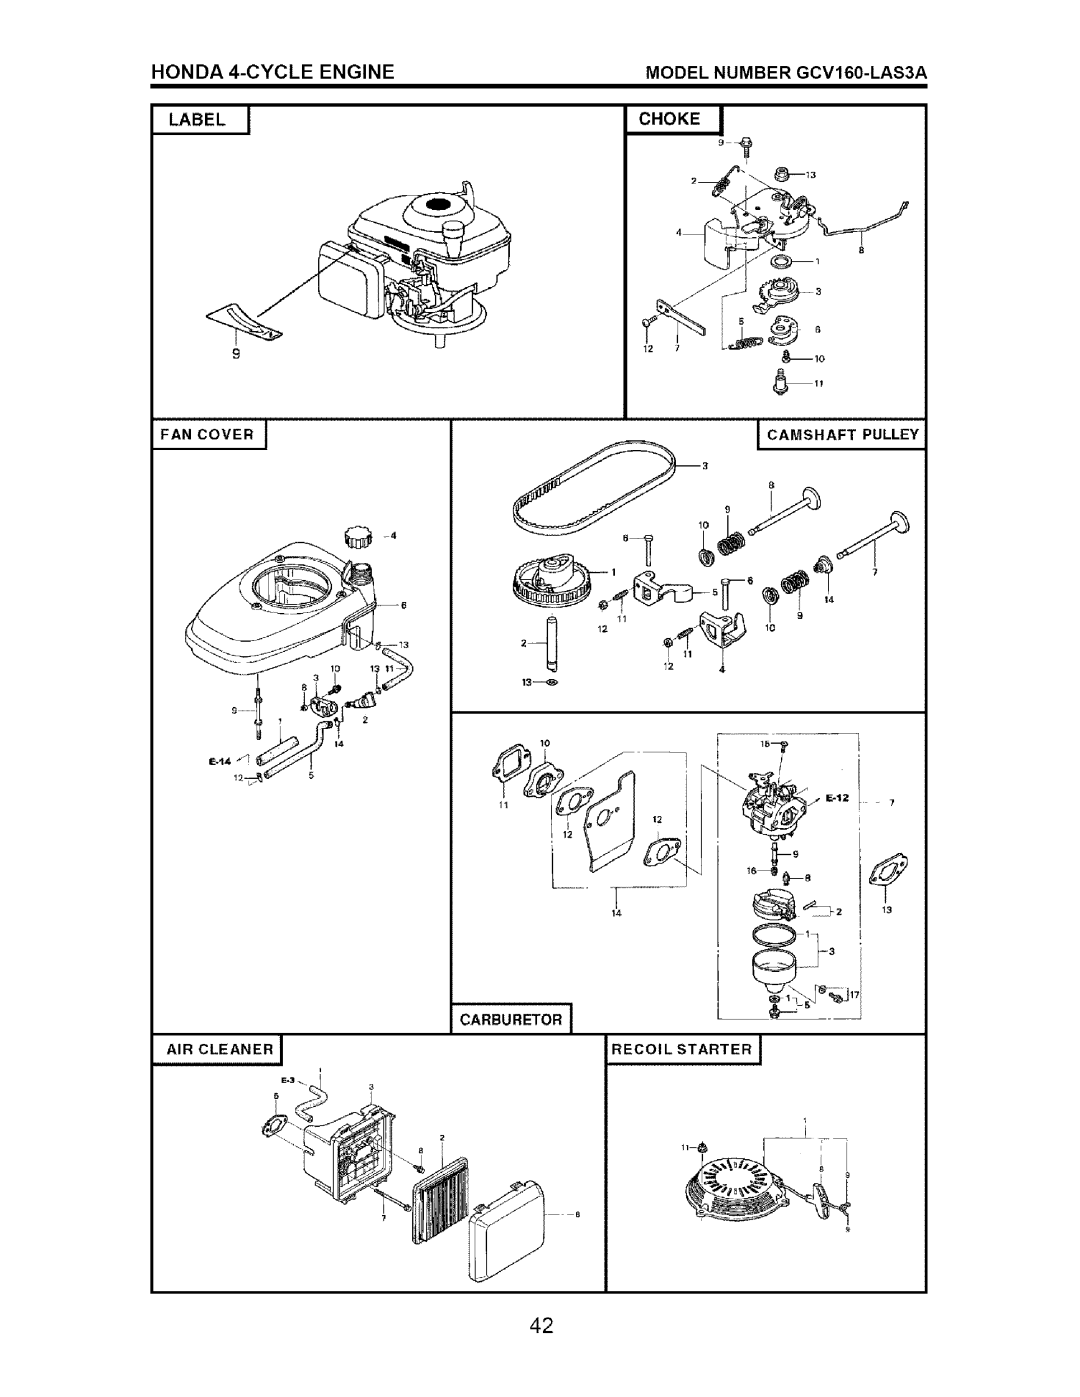 Craftsman 917.371721 HONDA 4-CYCLE ENGINE LABEL, MODEL NUMBER GCV160-LAS3A, Fan Cover, I Camshaft Pulley, Carburetor 